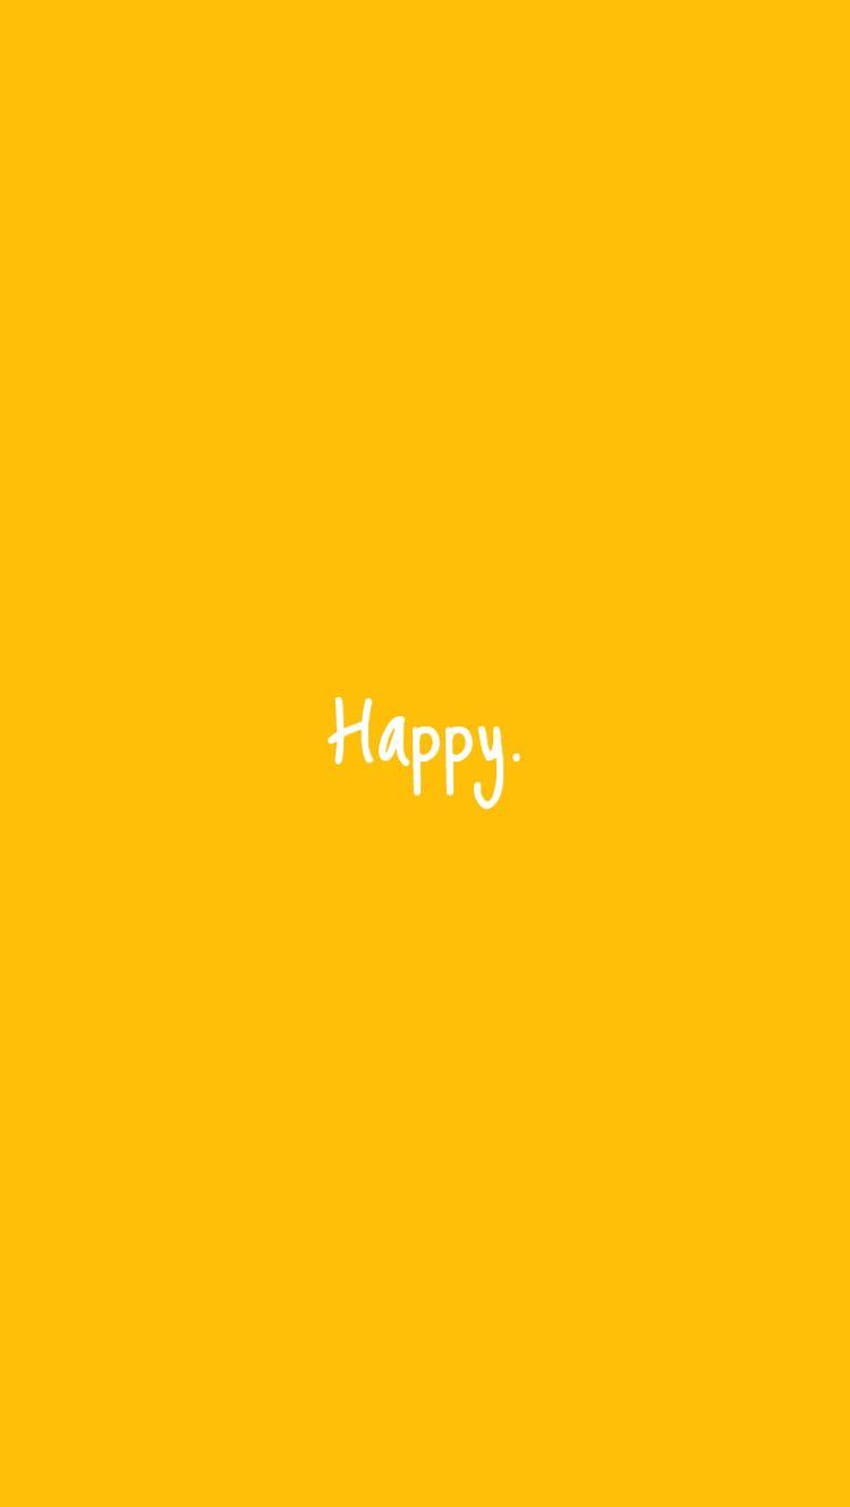 Be Happy iPhone amarillo fondo de pantalla del teléfono